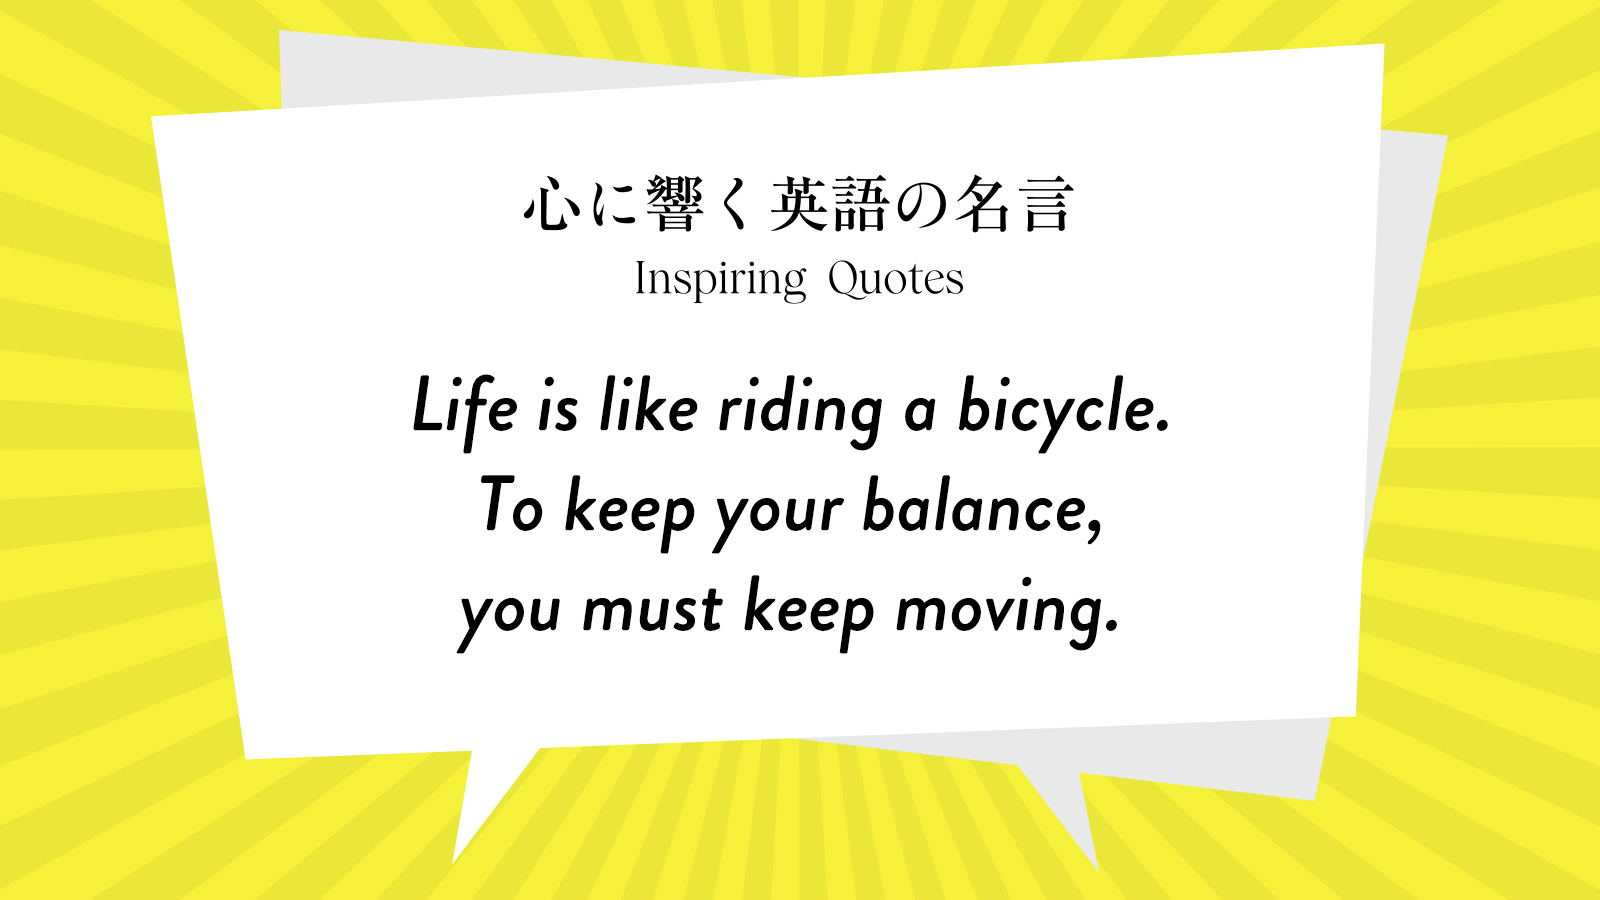 今週の名言 “Life is like riding a bicycle. To keep your balance, you must keep moving.” | Inspiring Quotes: 心に響く英語の名言